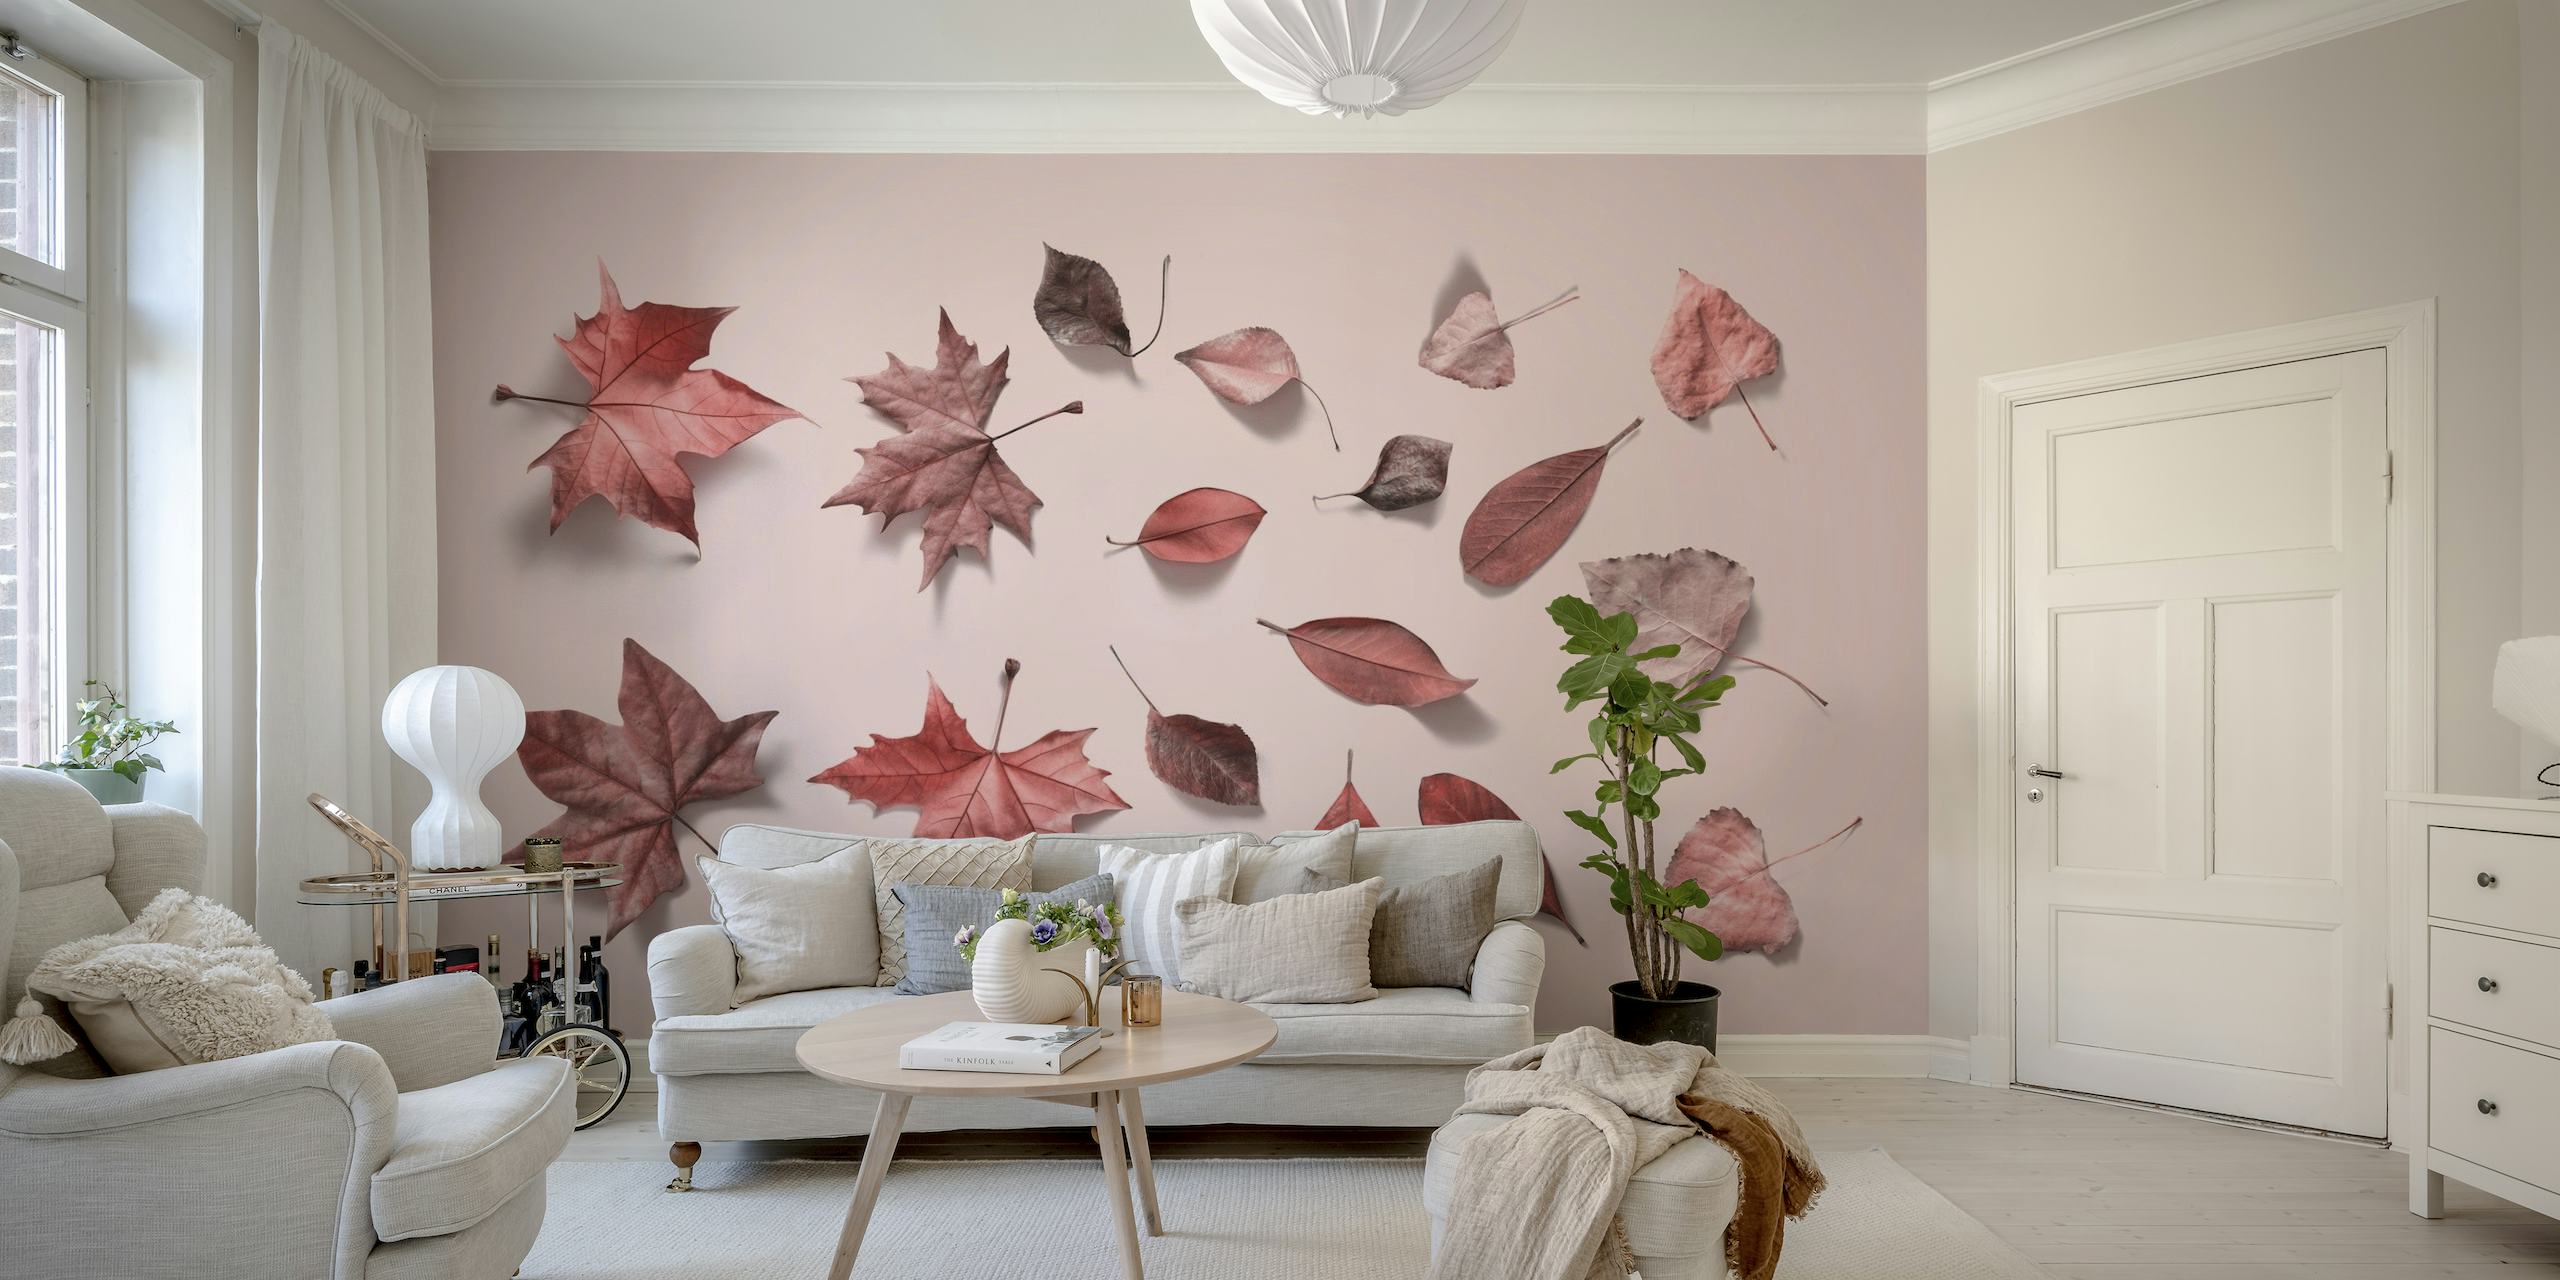 Fotomural vinílico de parede rosa claro com um arranjo disperso de folhas de outono em vários tons de rosa.